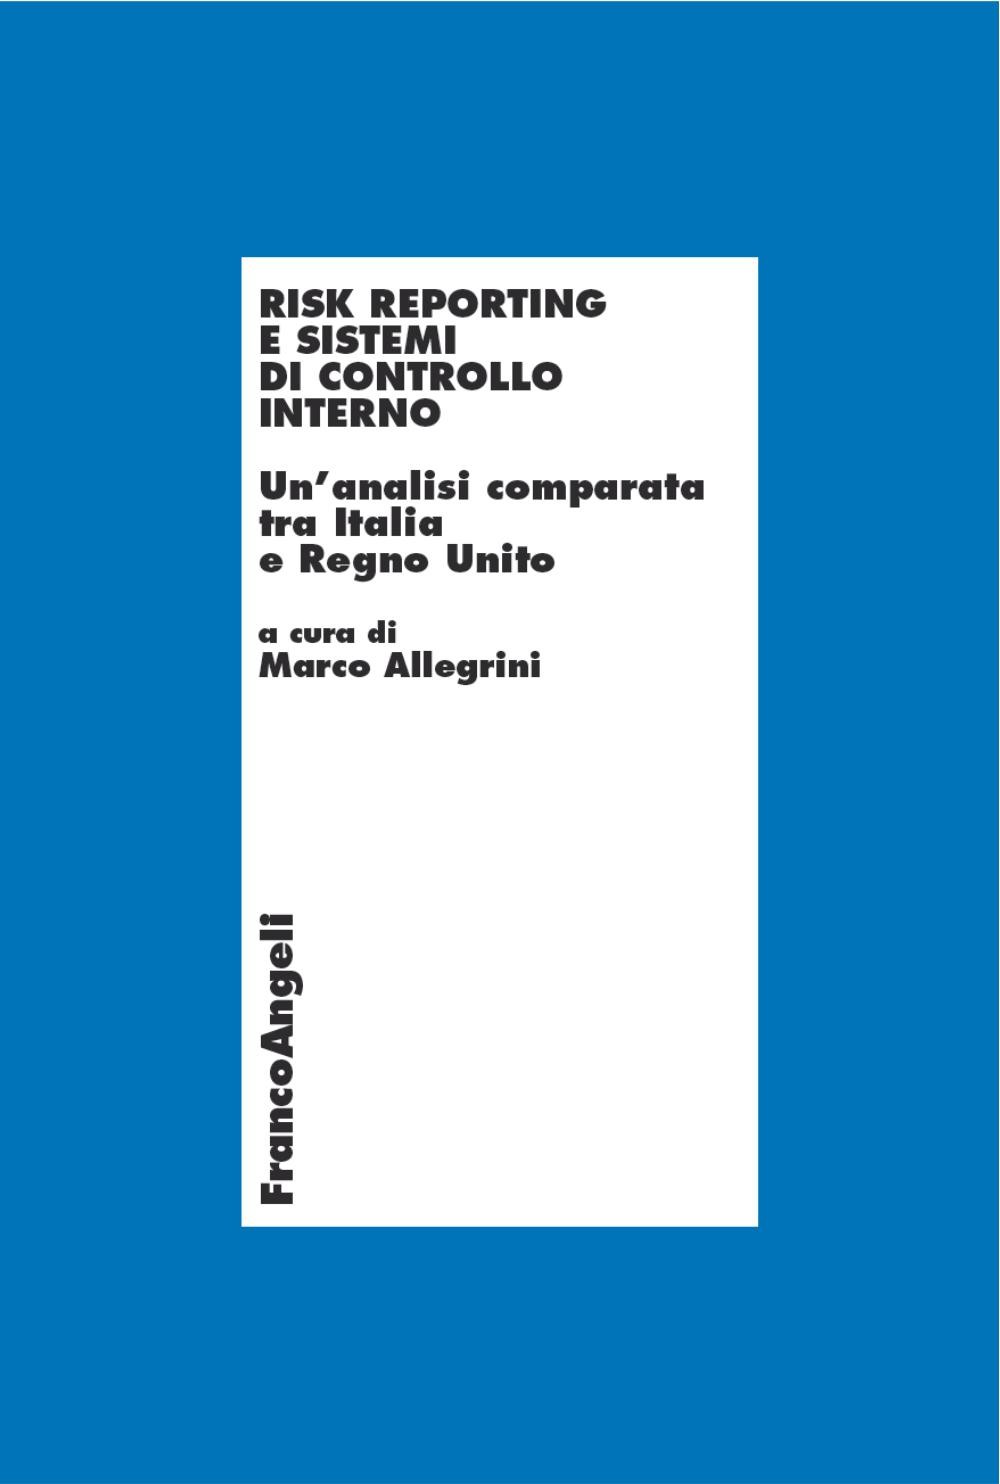 Risk reporting e sistemi di controllo interno. Un'analisi comparata tra Italia e Regno Unito - Librerie.coop